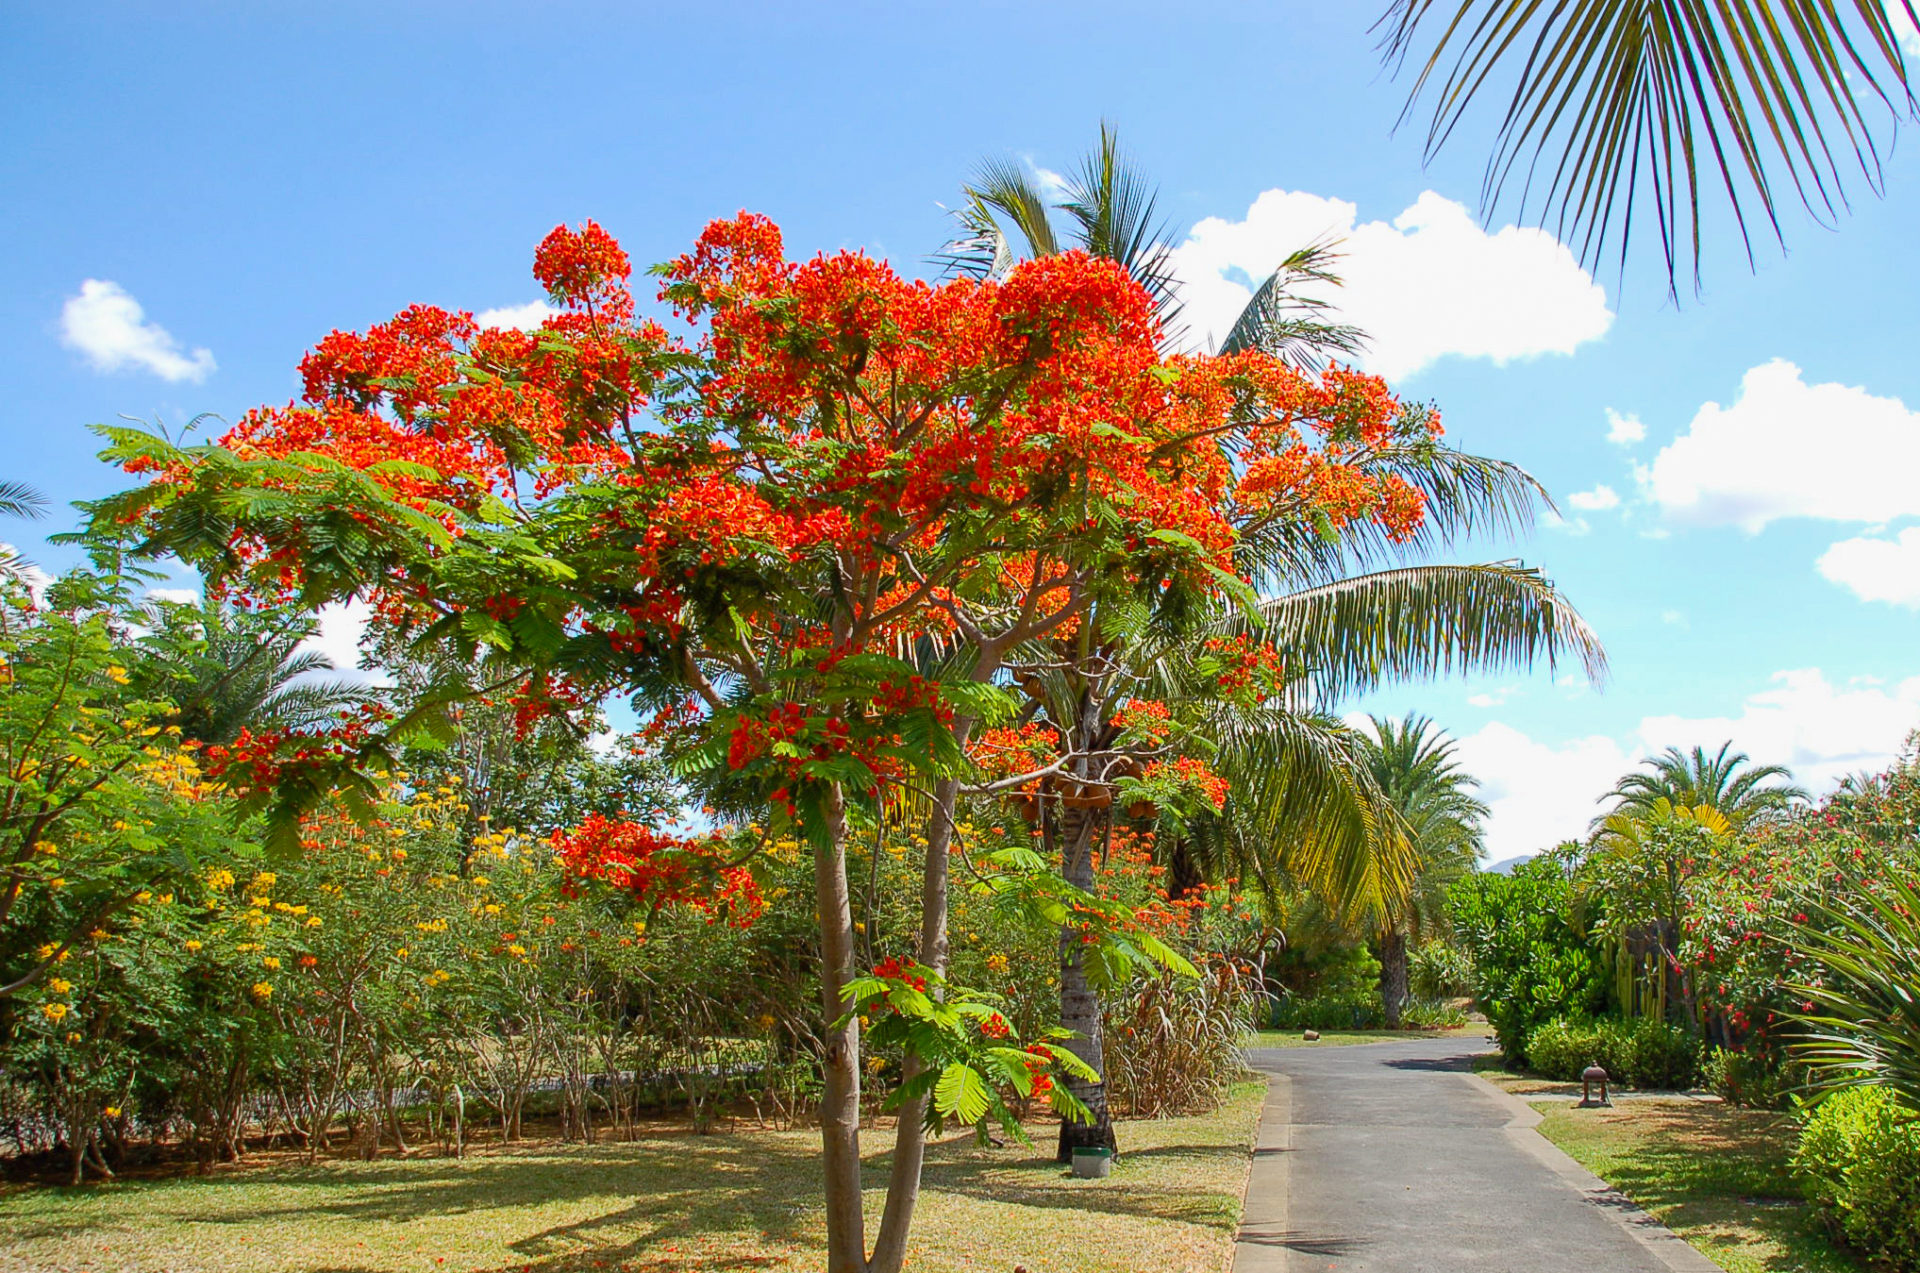 Flammenbaum auf dem Gelände des Maradica Resort in Mauritius